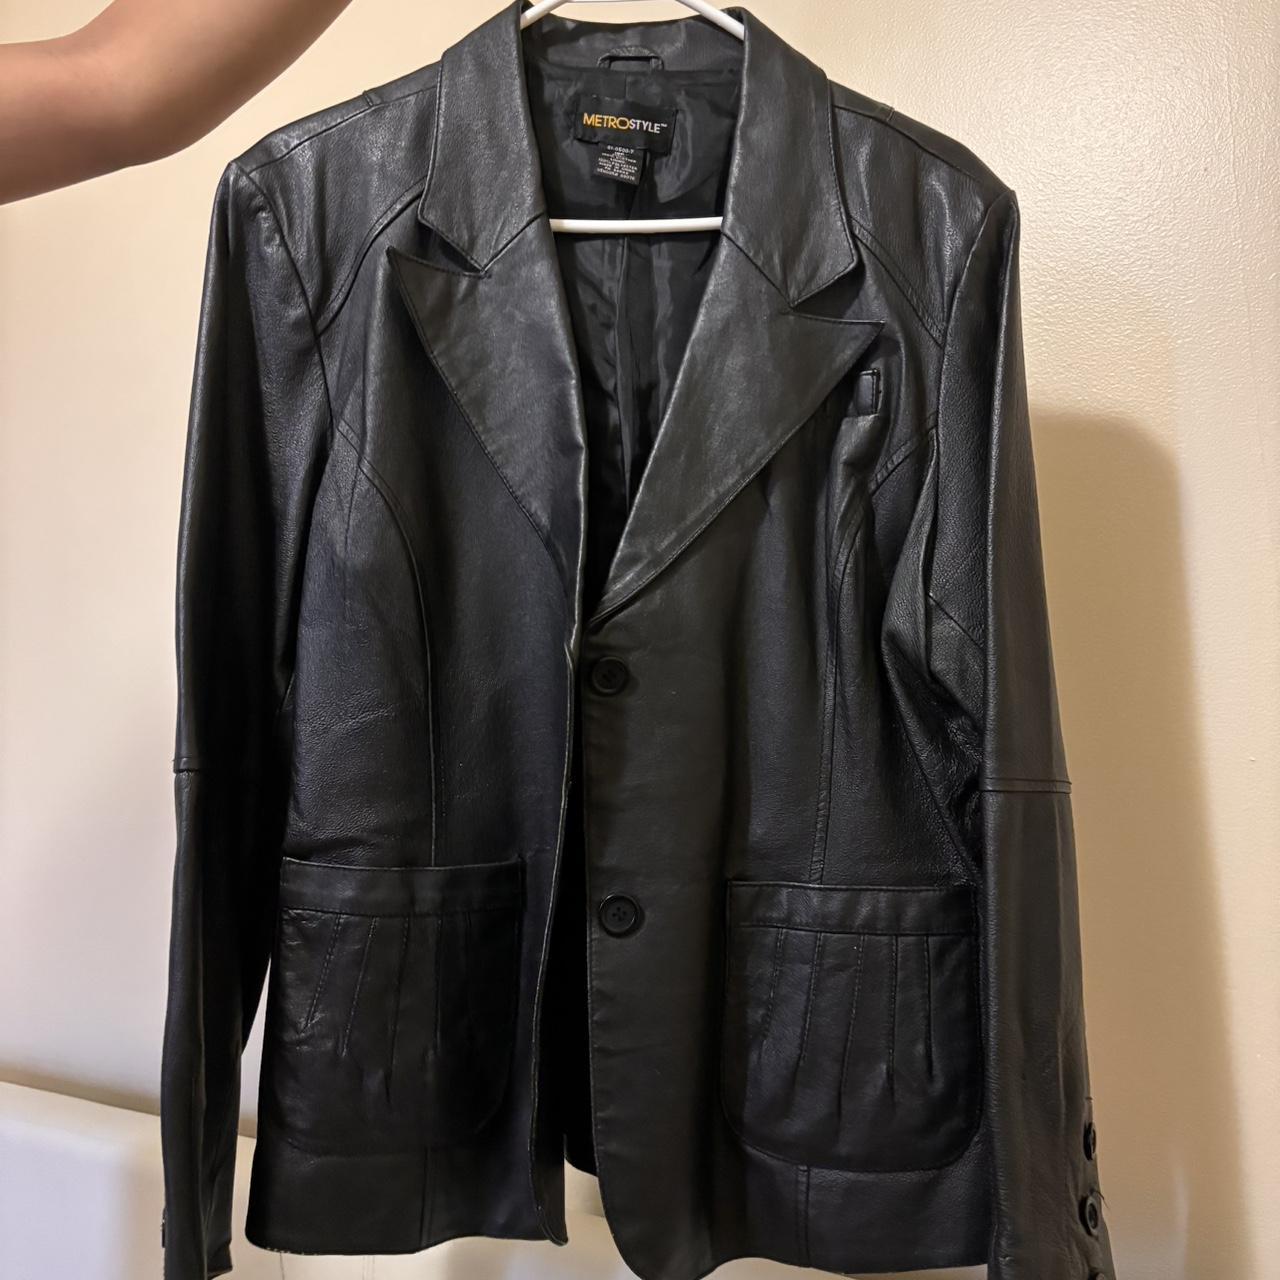 Vintage oversized blazer leather jacket Fits both... - Depop